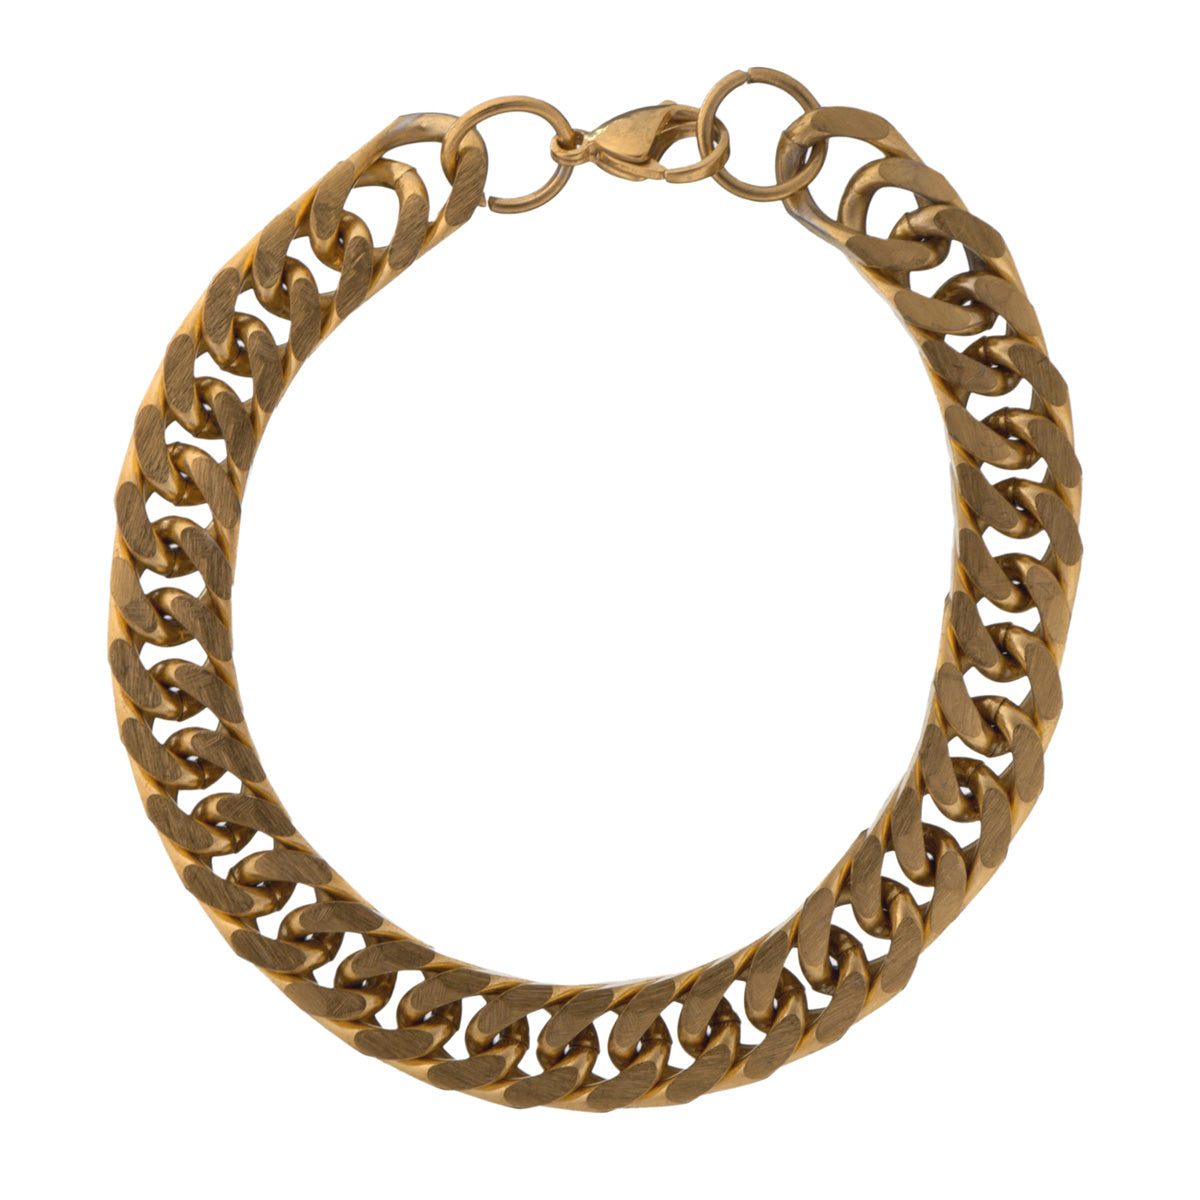 Dense armour chain bracelet (Steel 316L)